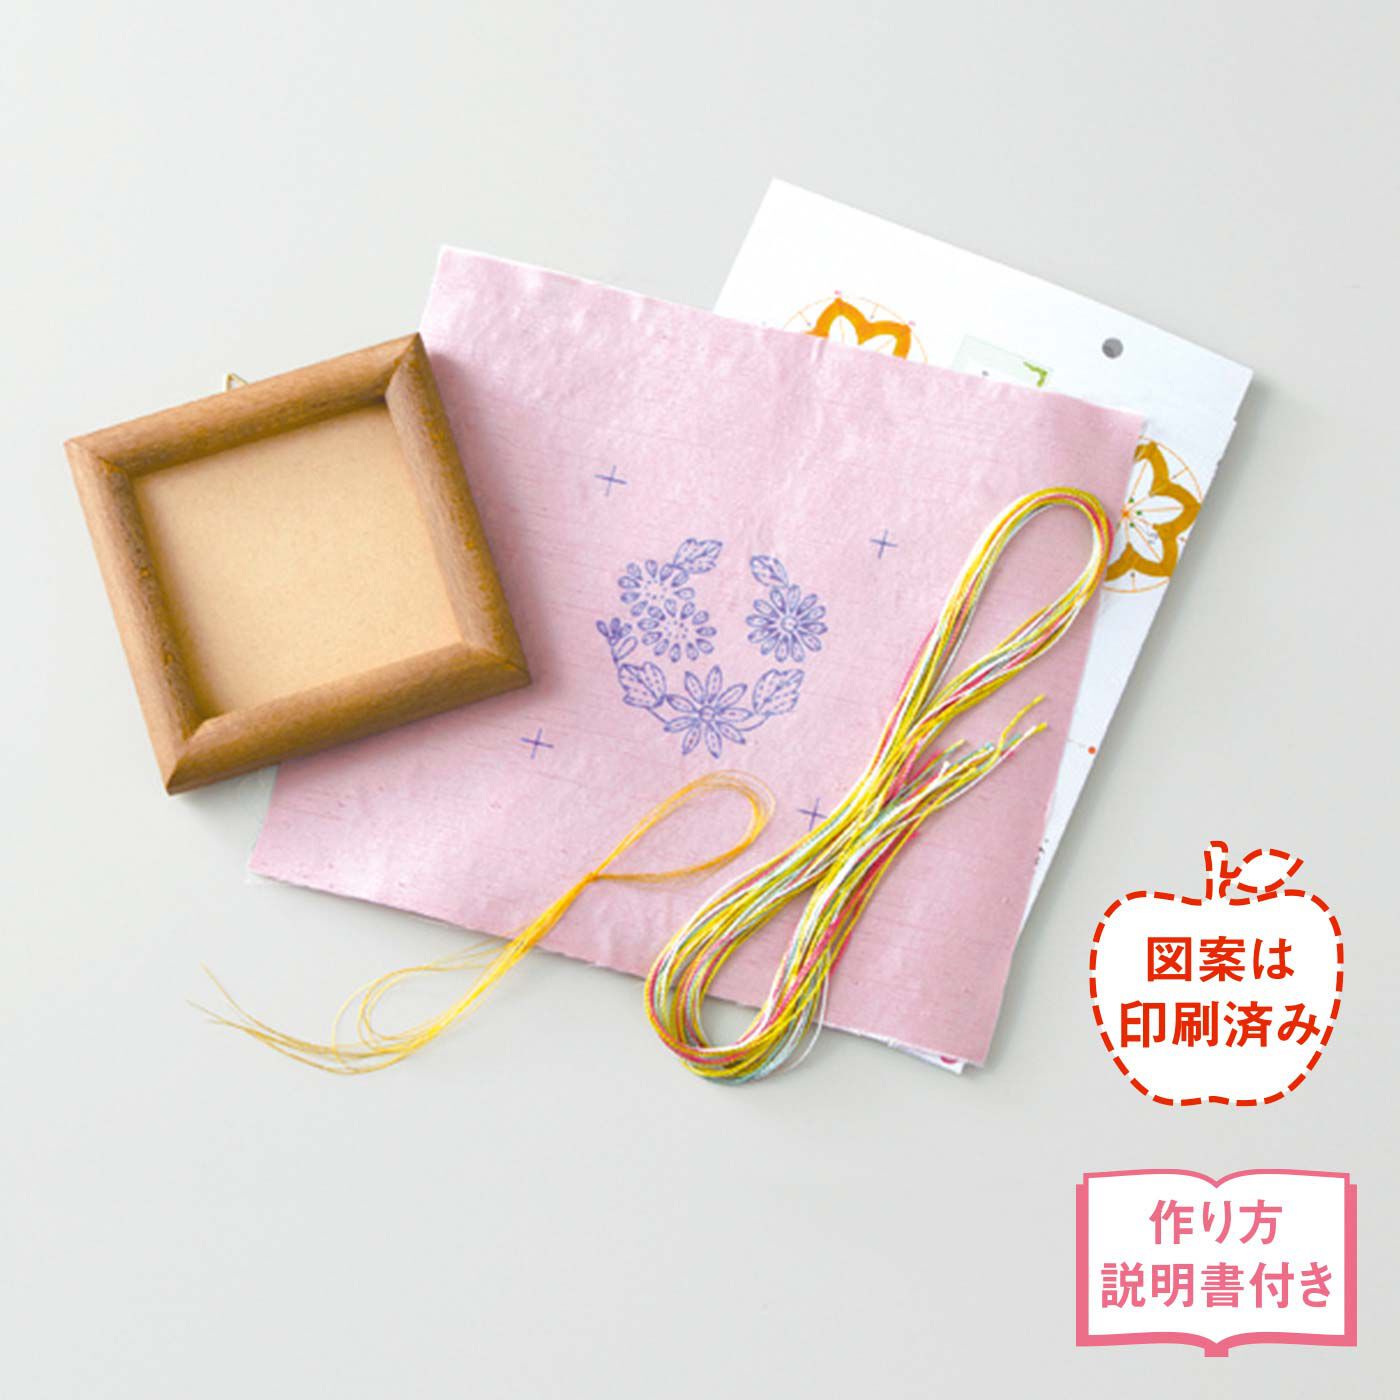 クチュリエ|日本刺しゅうにあこがれて　絹糸の優美な輝き文様フレームの会|●1回分のお届けキット例です。